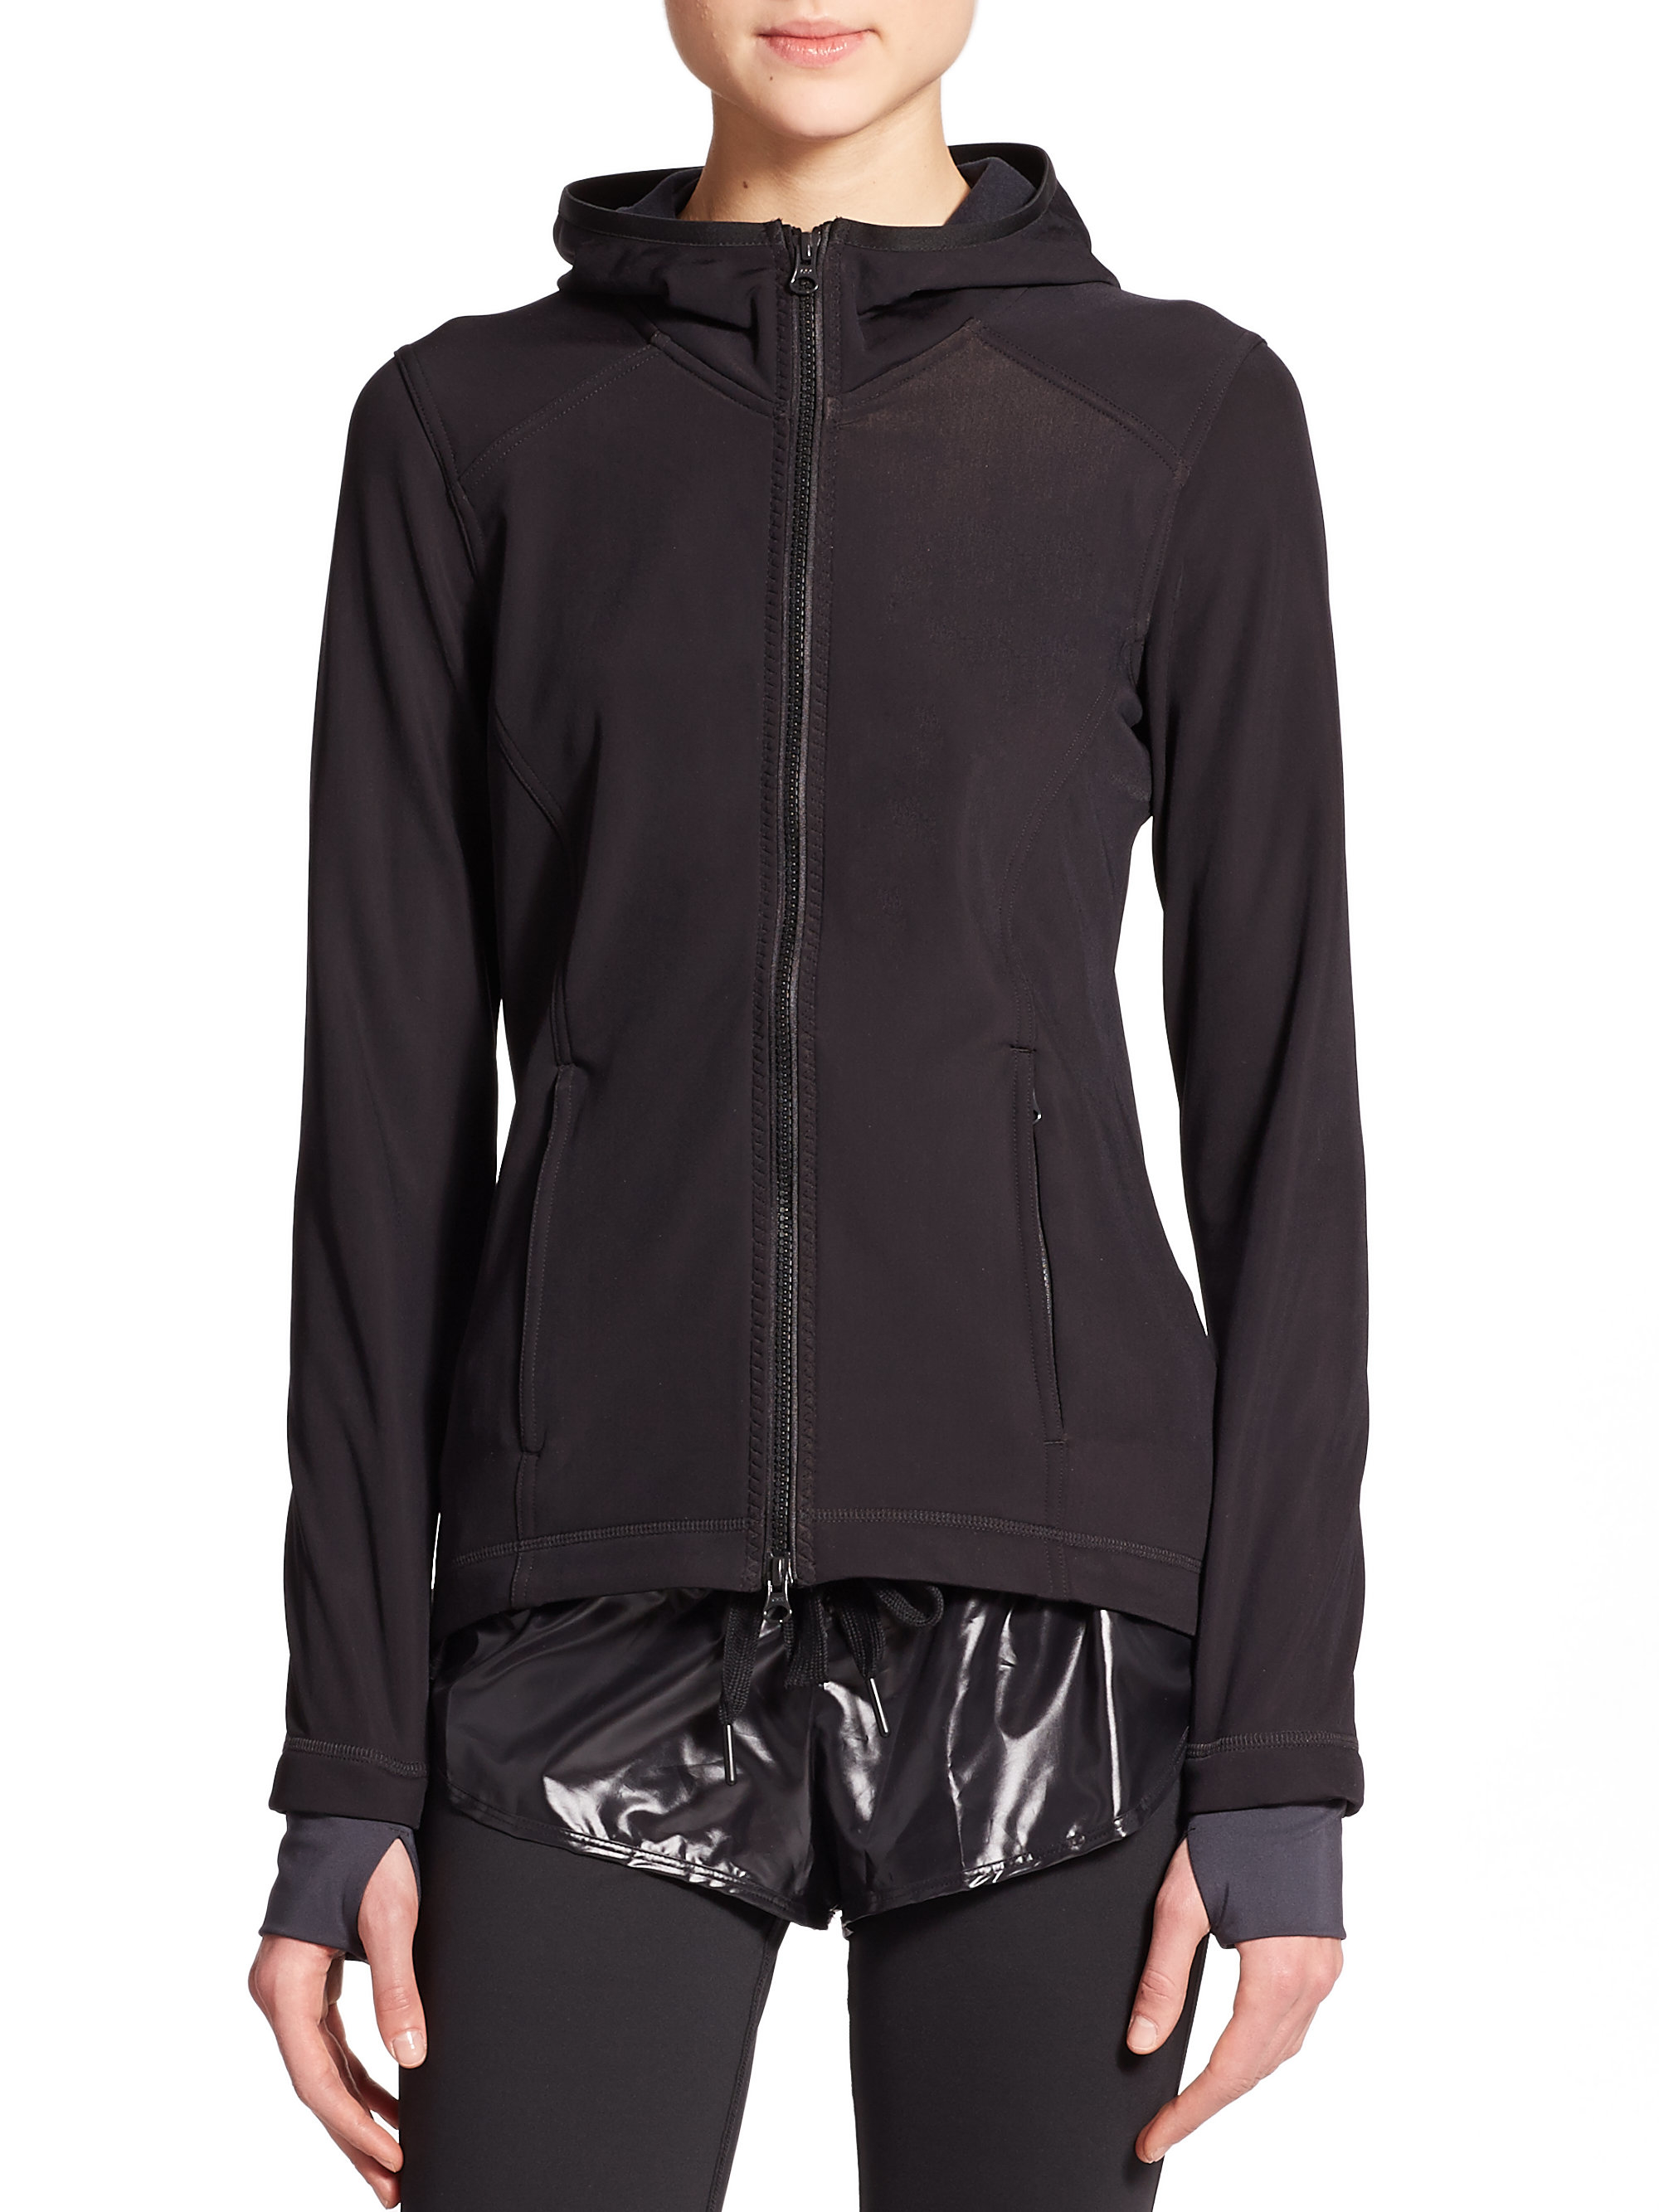 Lyst - Adidas by stella mccartney Zip-up Fleece Hoodie in Black